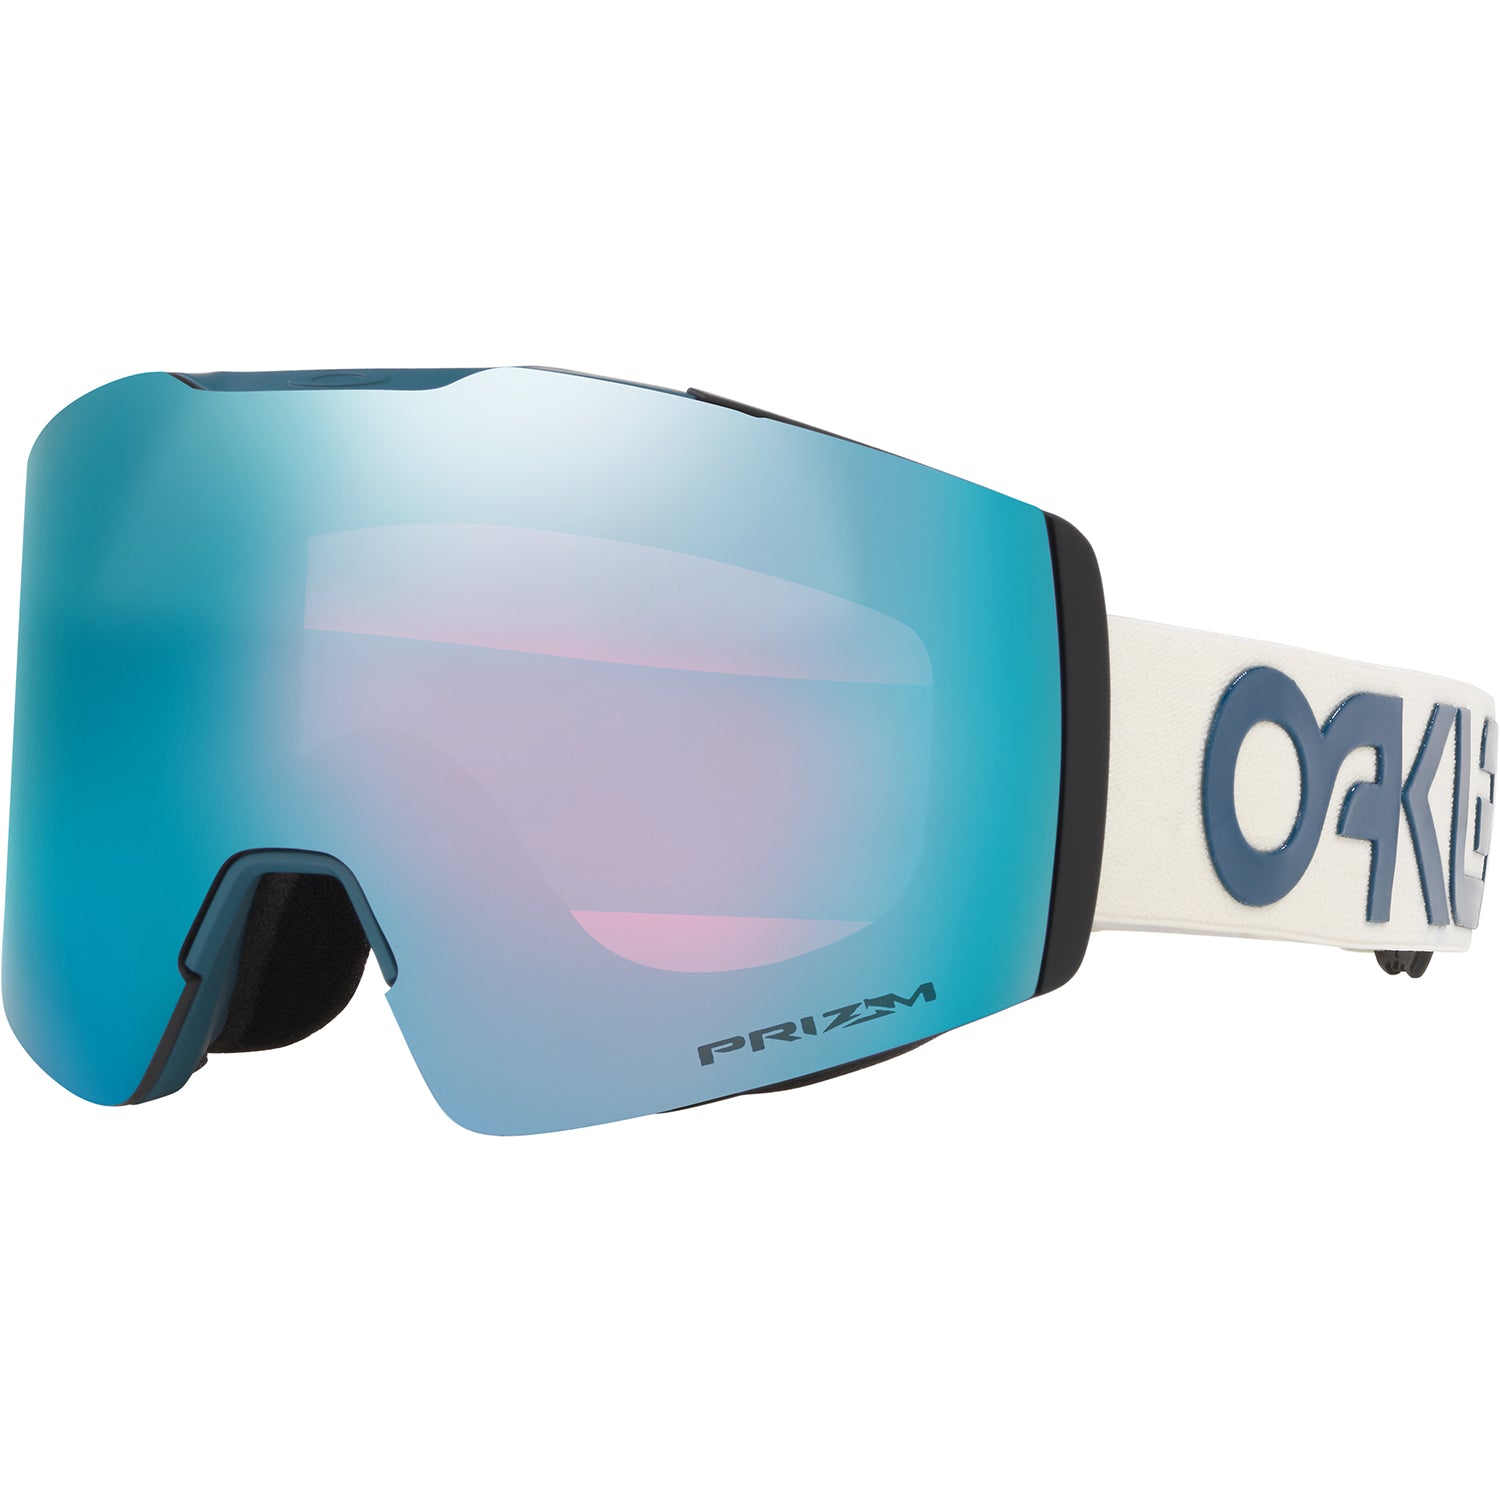 2020 oakley goggles